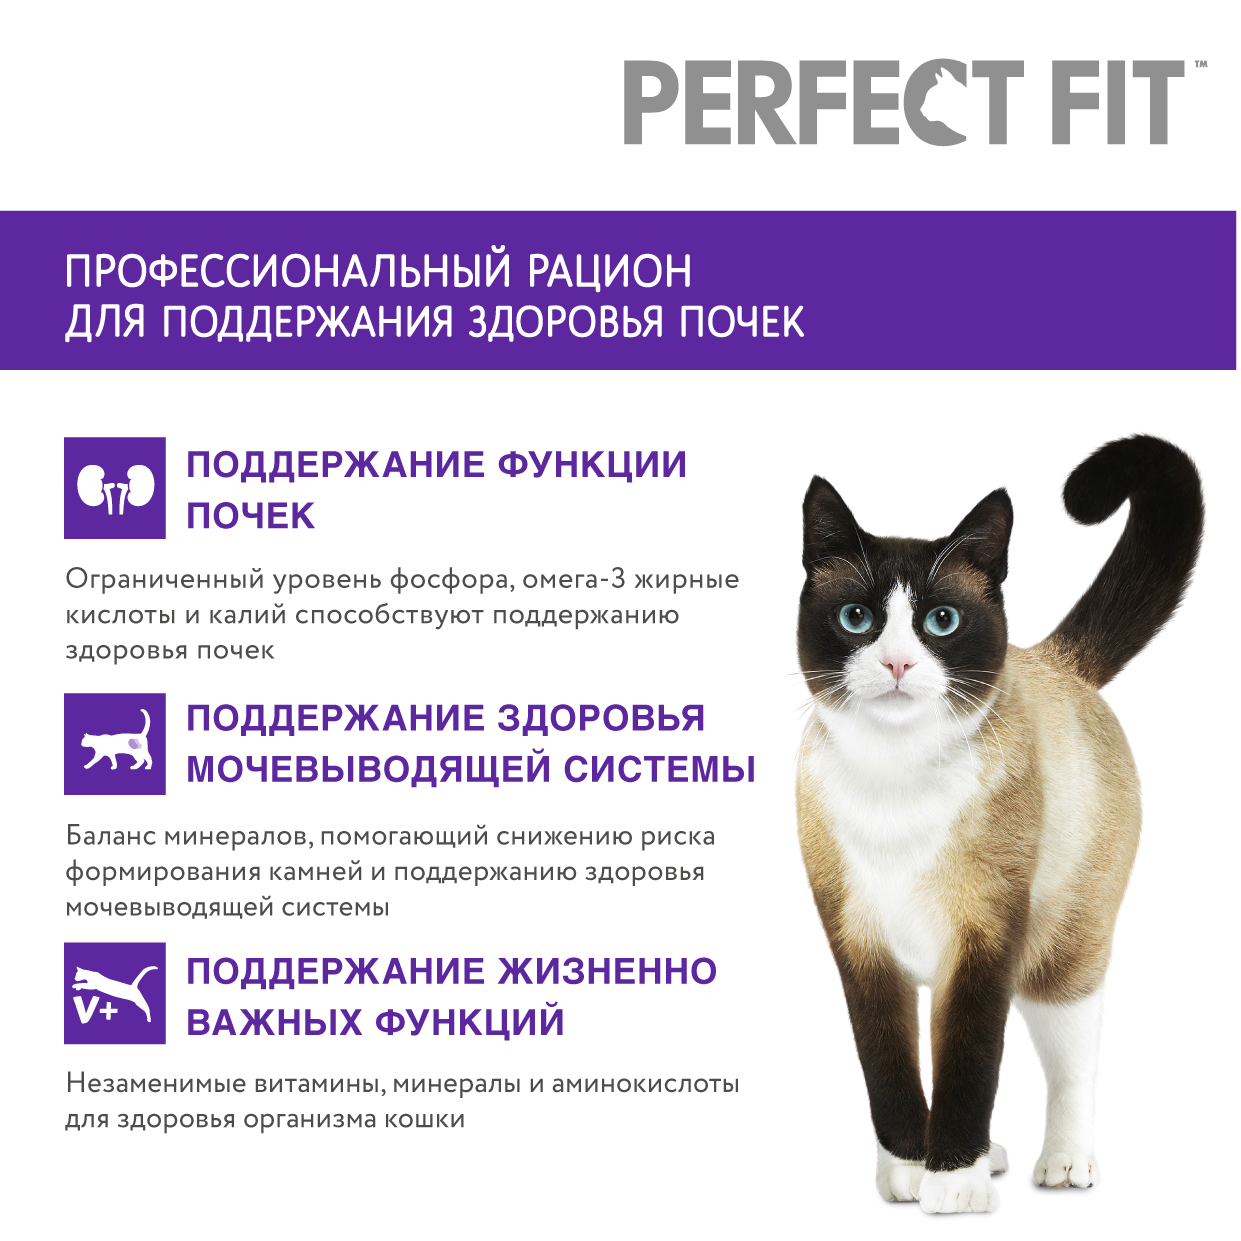 Сухой корм  для взрослых кошек PERFECT FIT «Здоровье почек» с лососем, 2.5кг